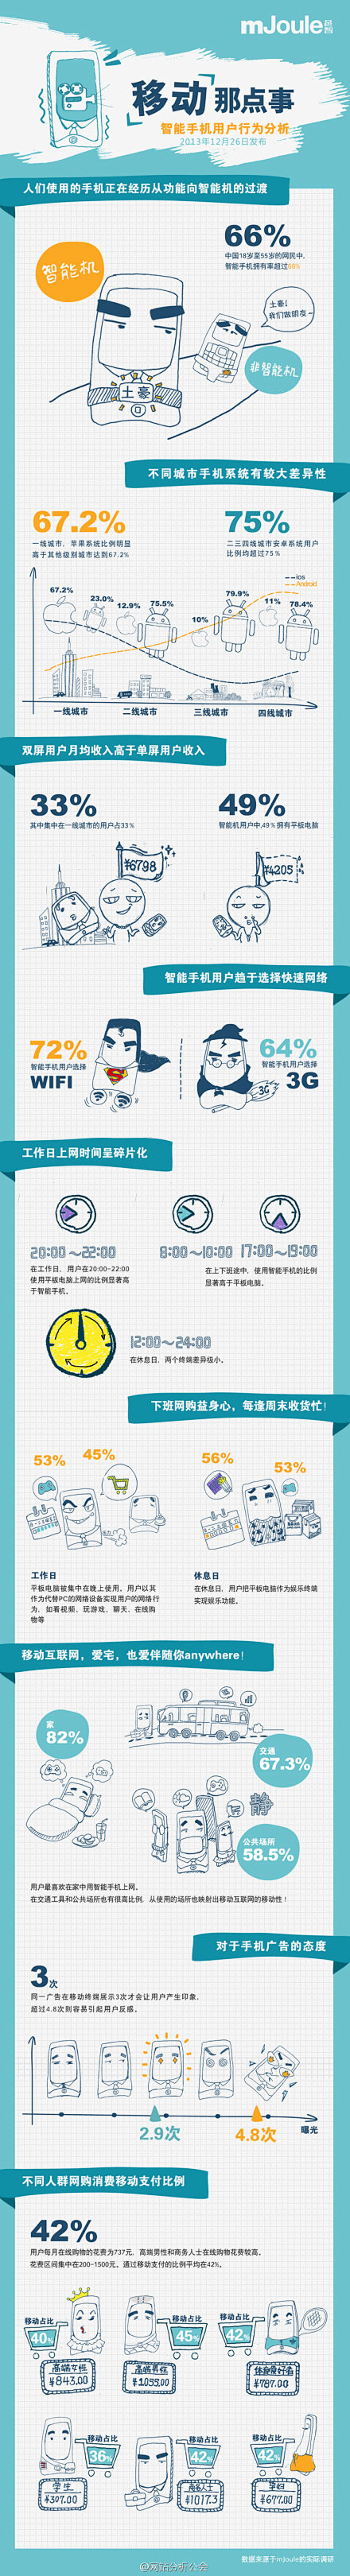 【2013年中国智能手机用户行为报告】7...